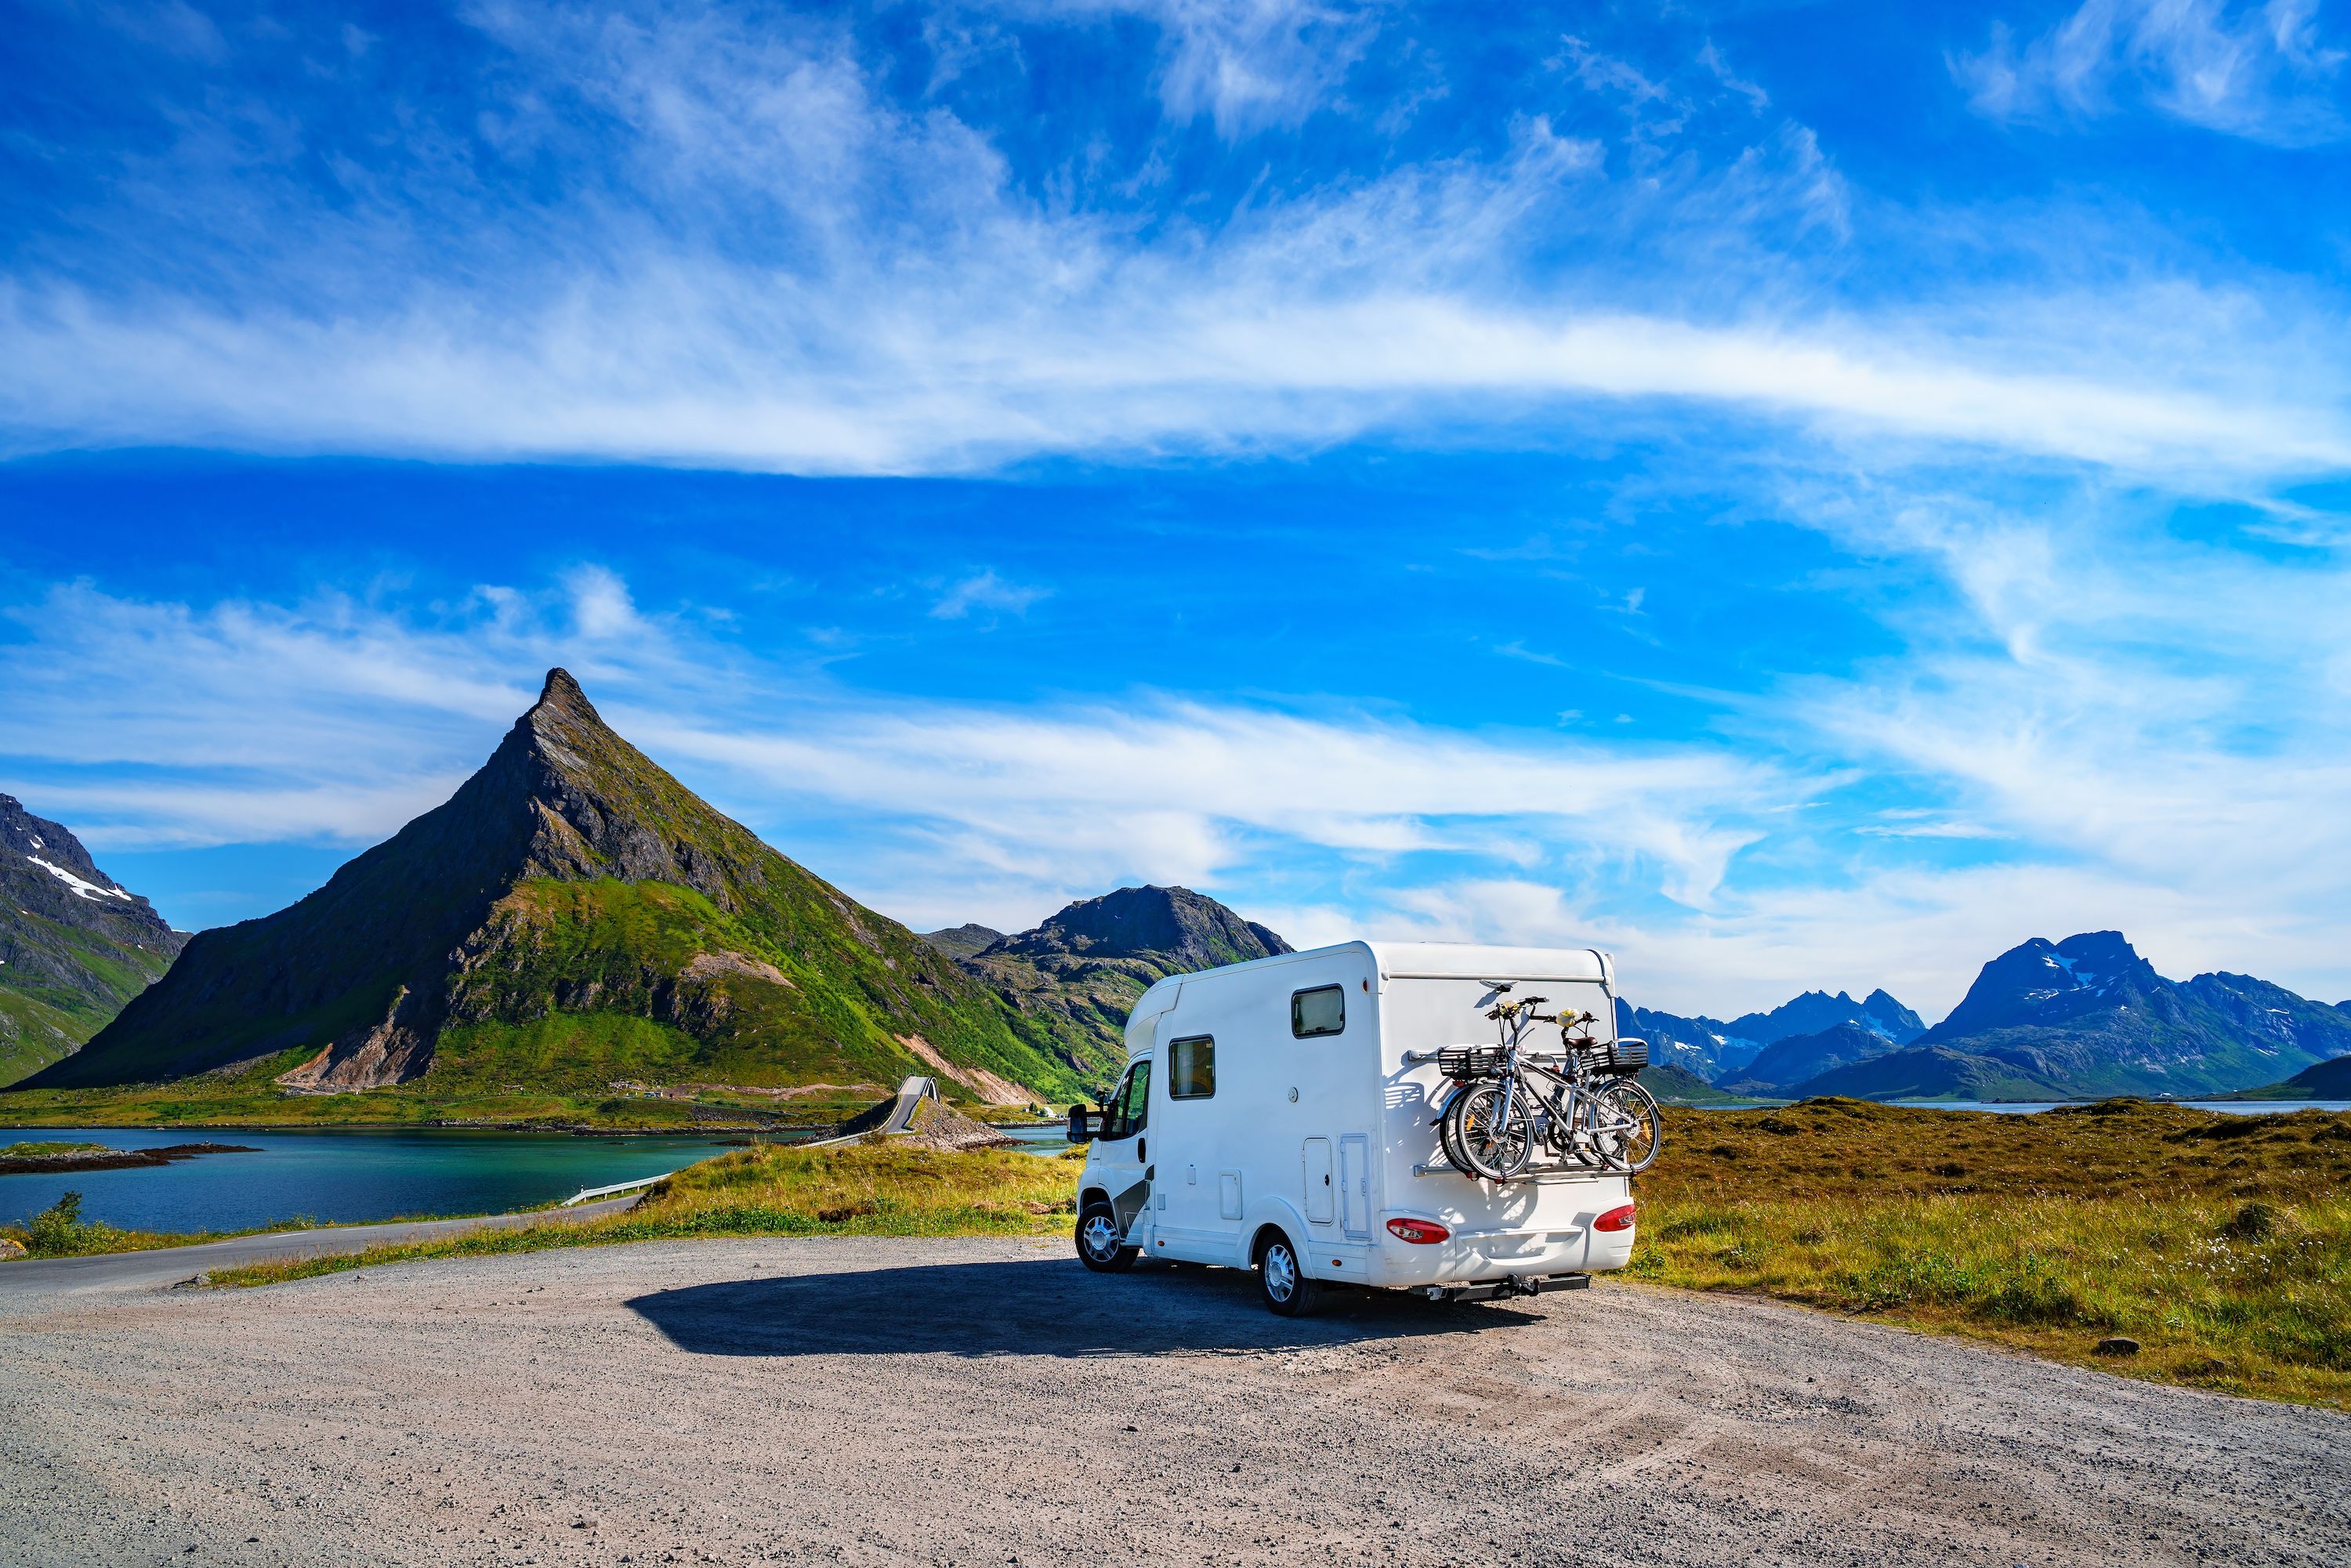 Гора караванов. Караванинг в Норвегии. Исландия на домах на колесах. Автодом на фоне гор. Дом на колесах на фоне гор.